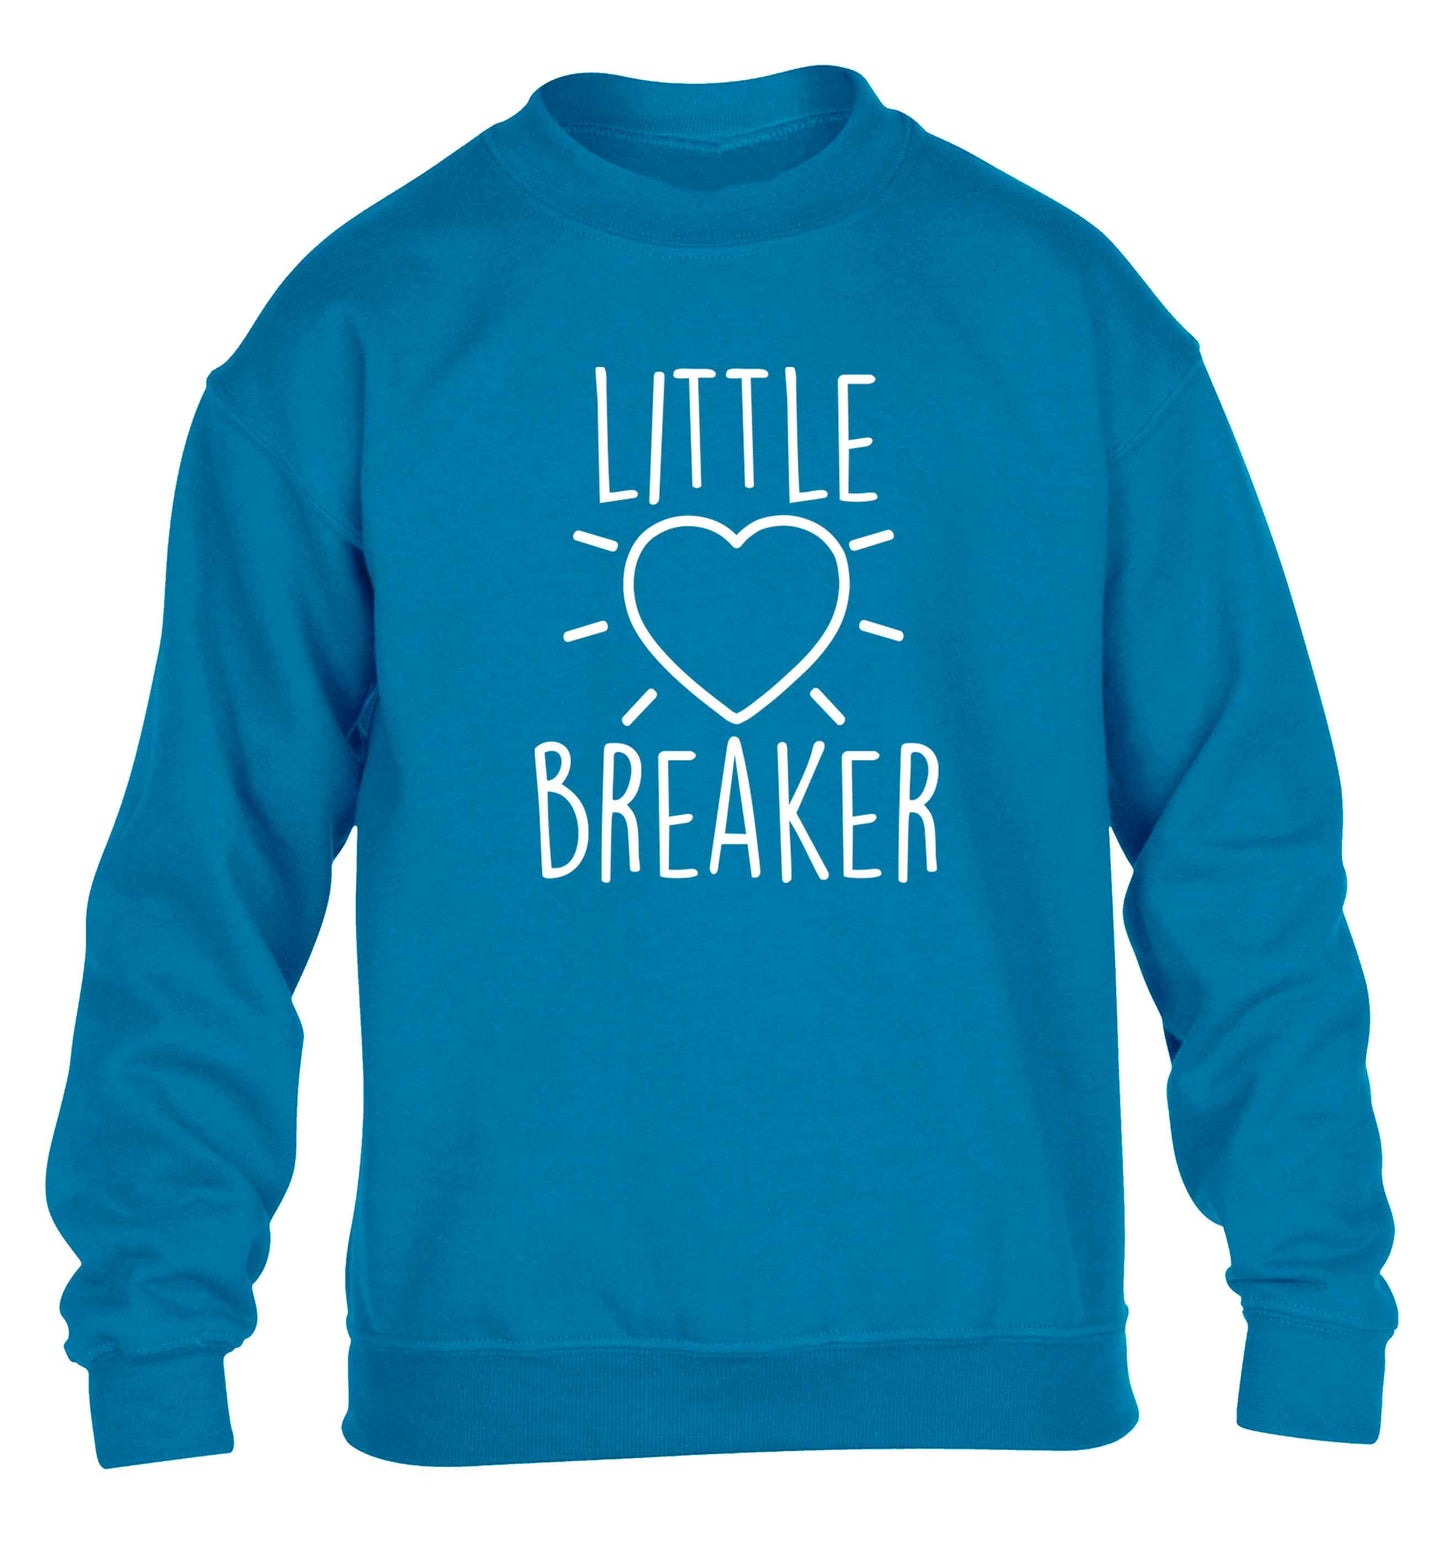 Little heartbreaker children's blue sweater 12-13 Years